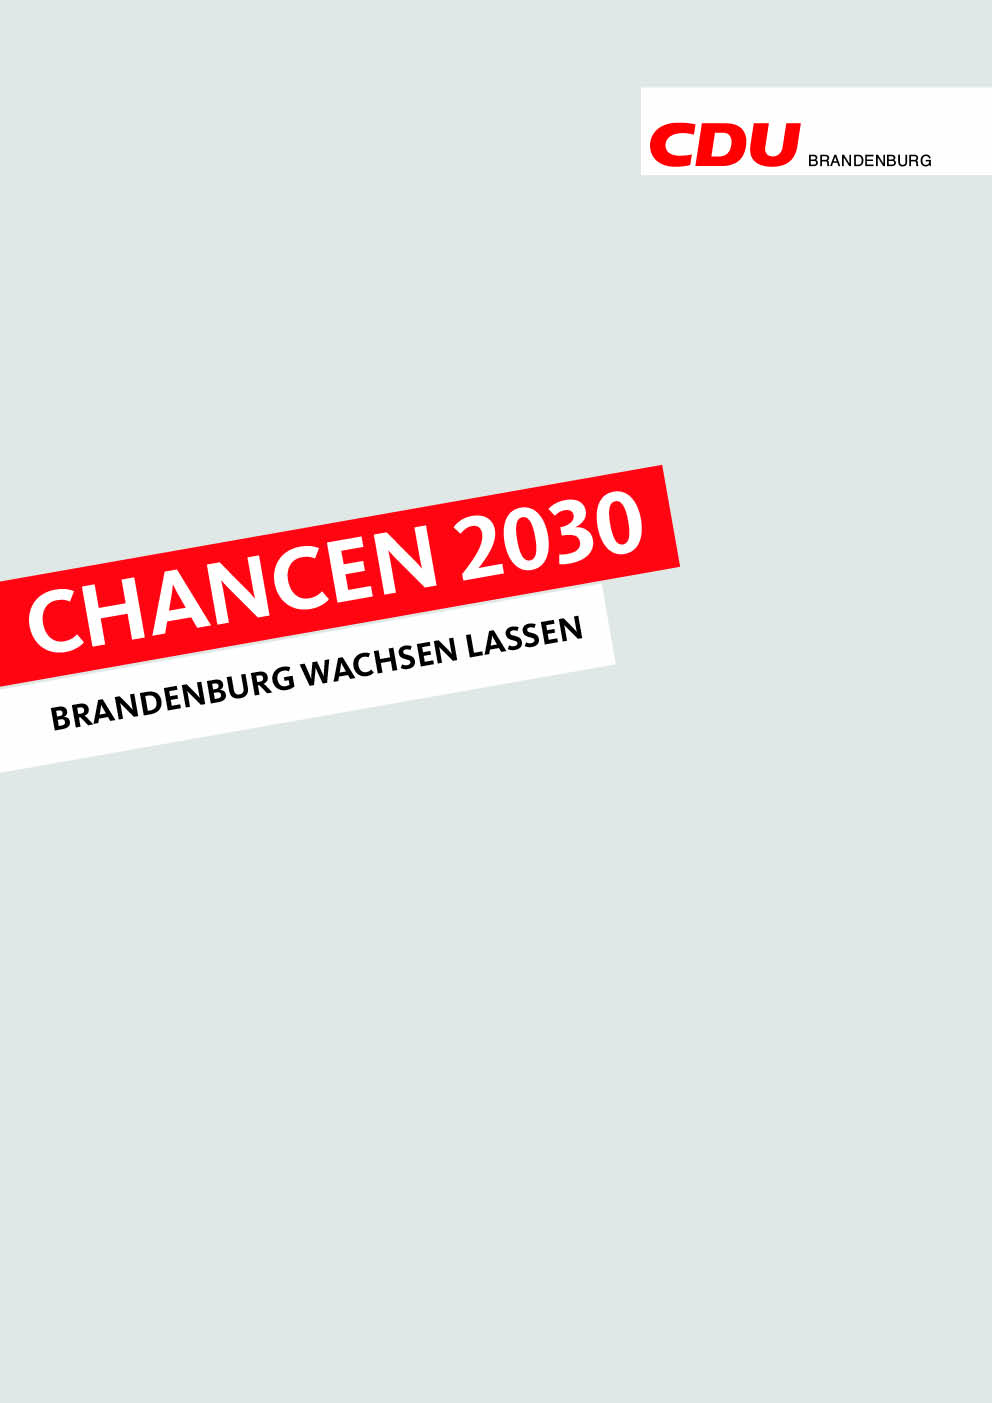 Chancen 2030 - Brandenburg wachsen lassen